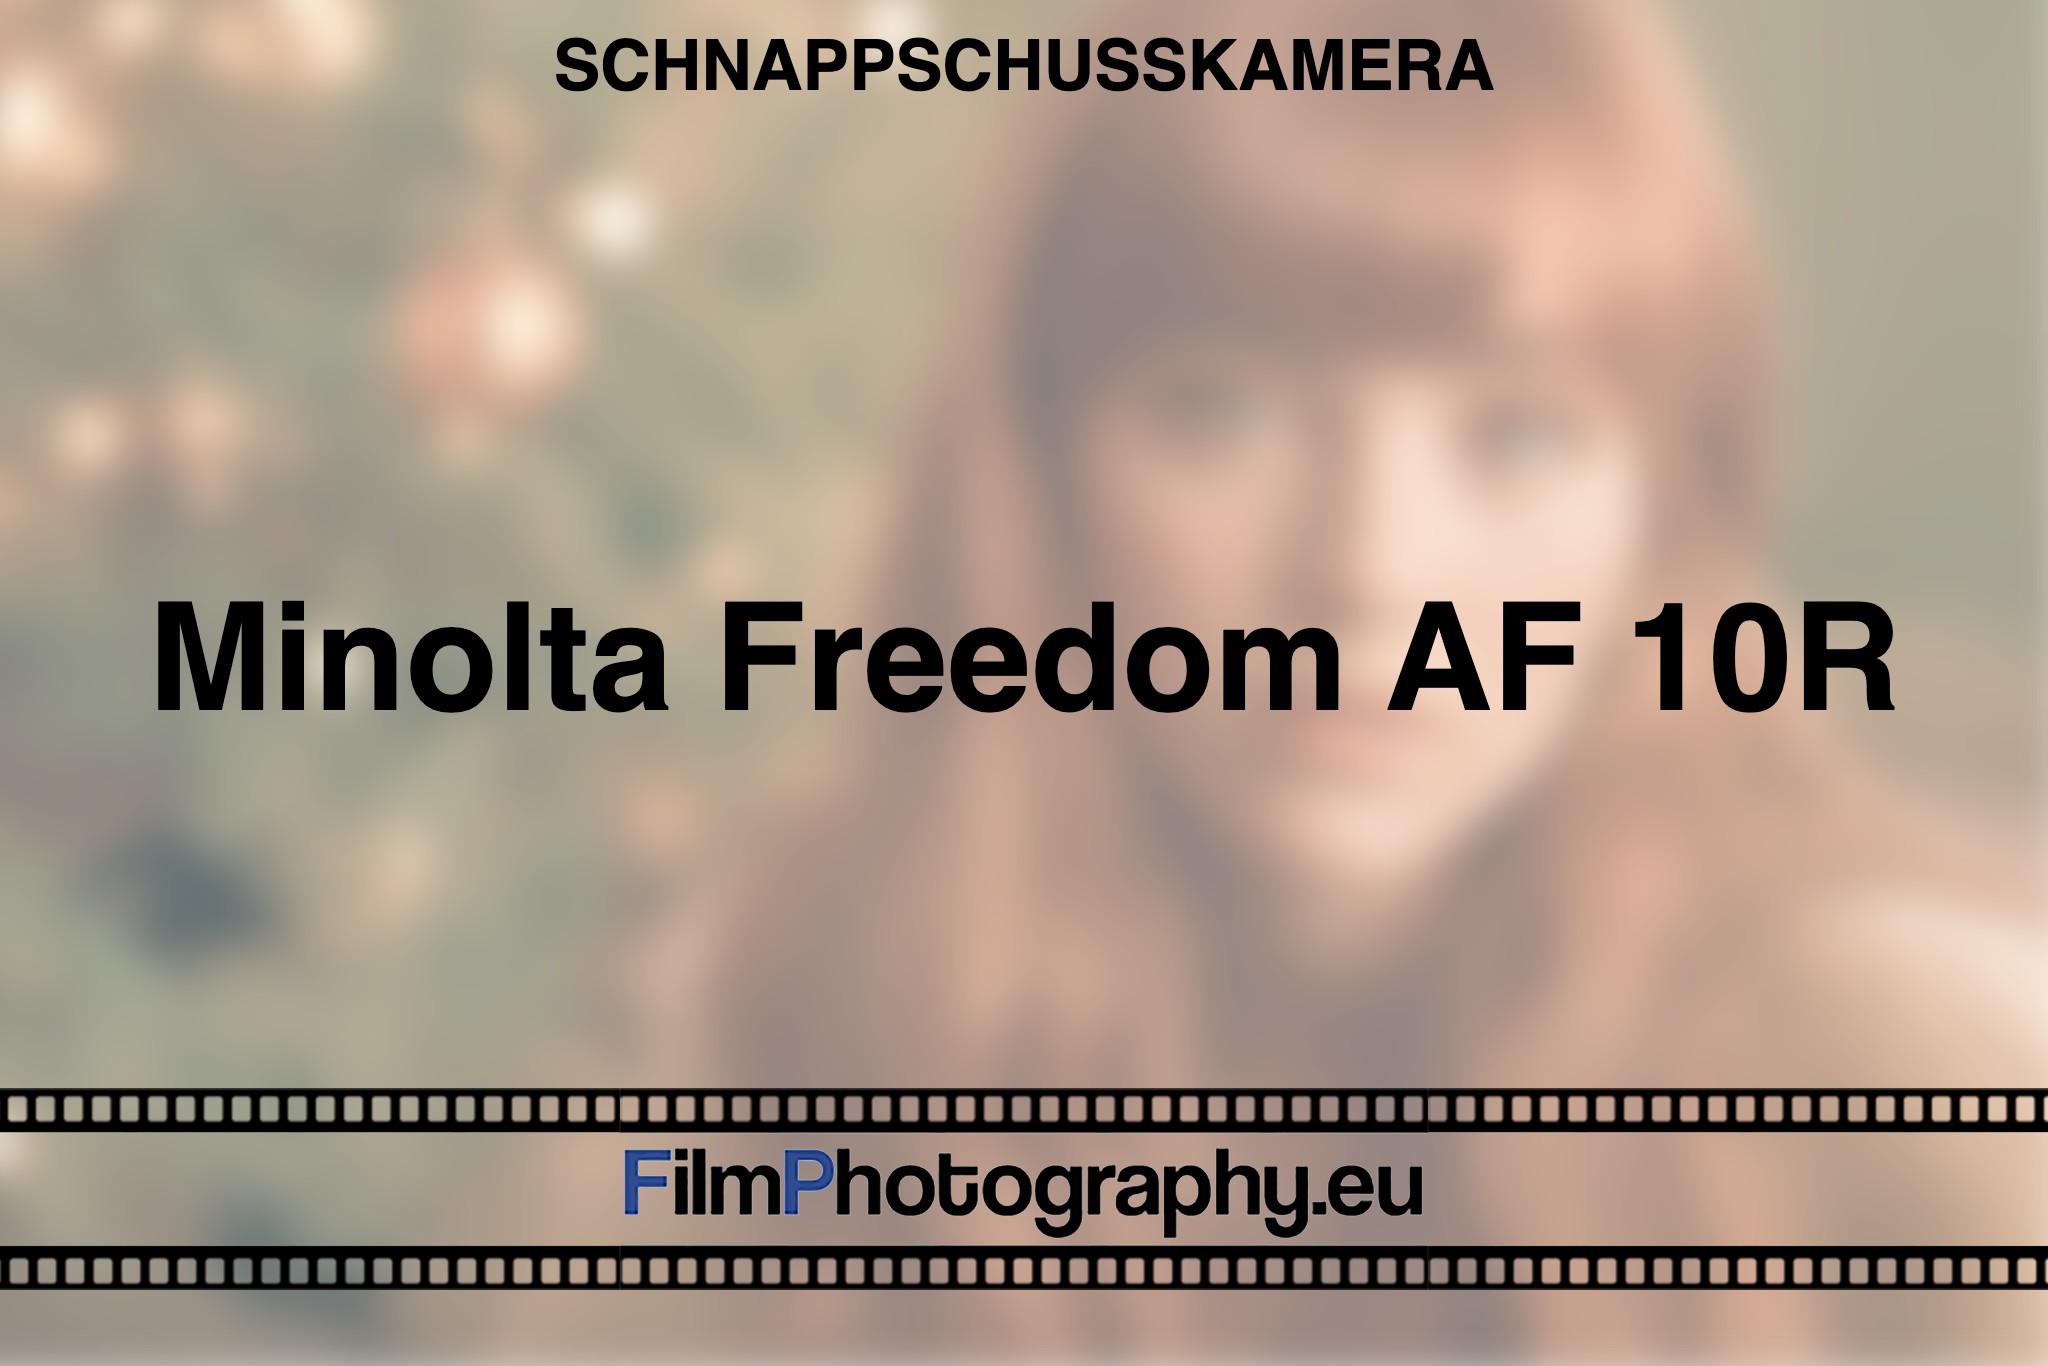 minolta-freedom-af-10r-schnappschusskamera-bnv